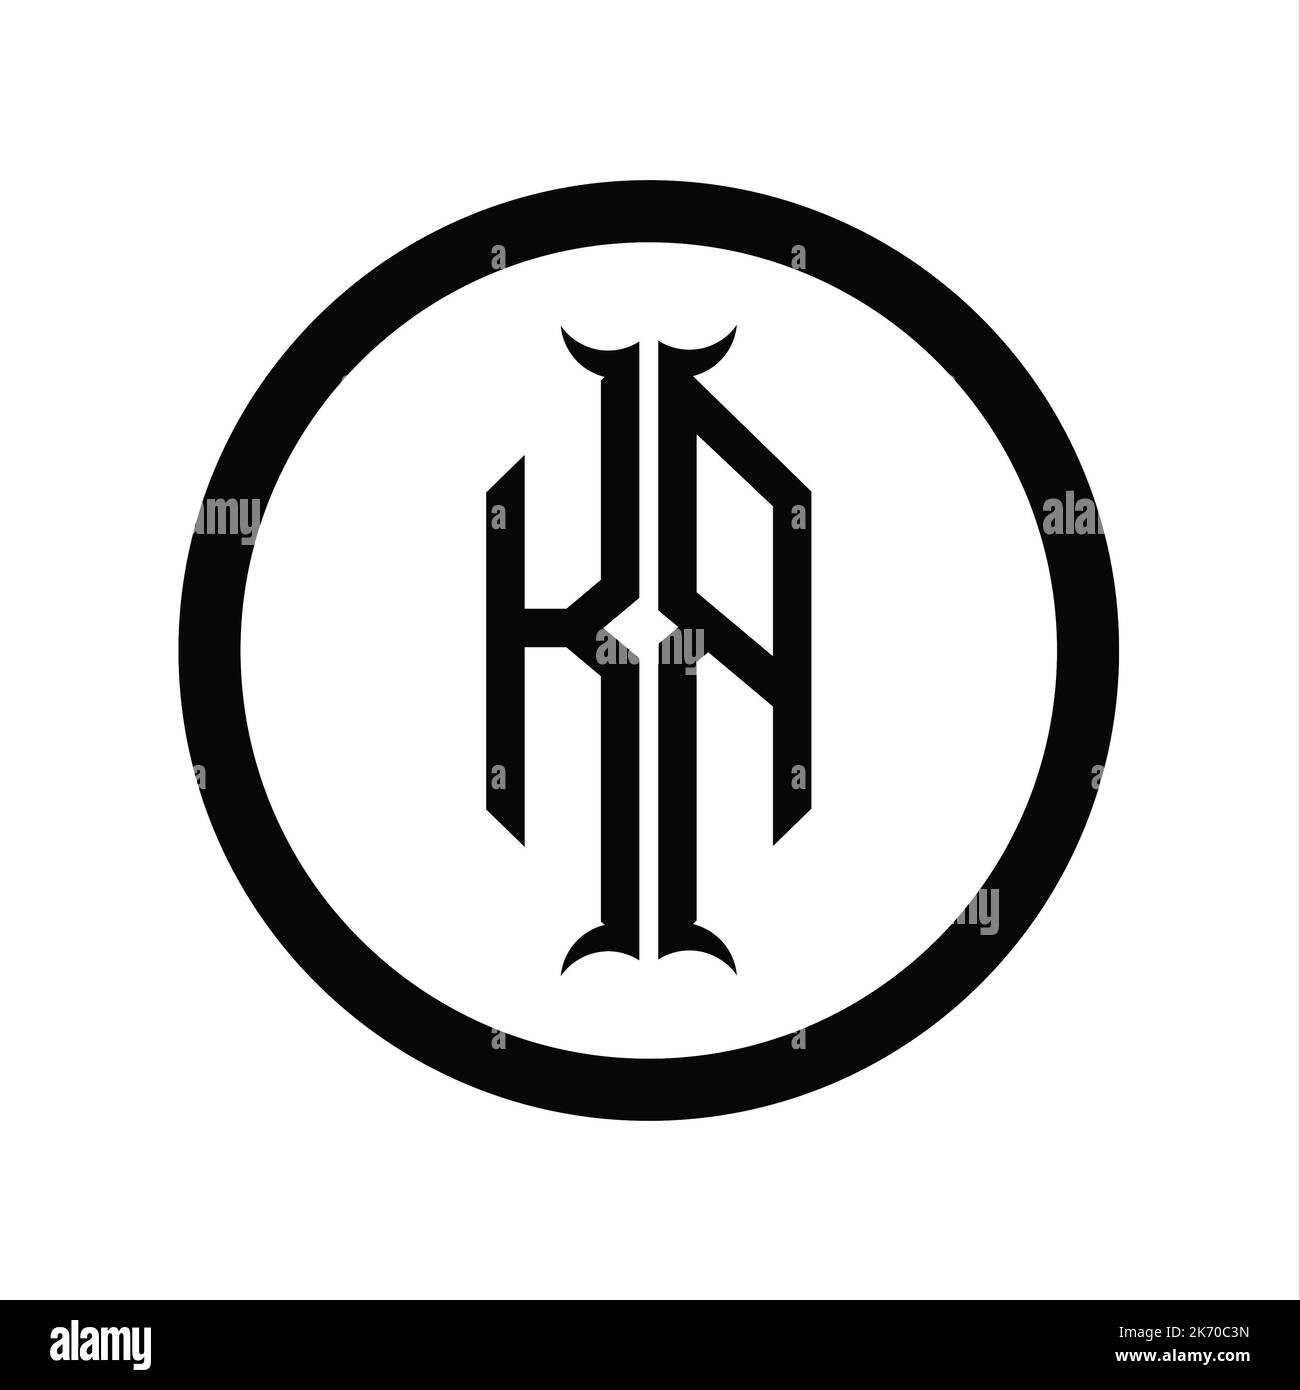 RK Logo monogram letter with hexagon horn shape design template Stock Photo